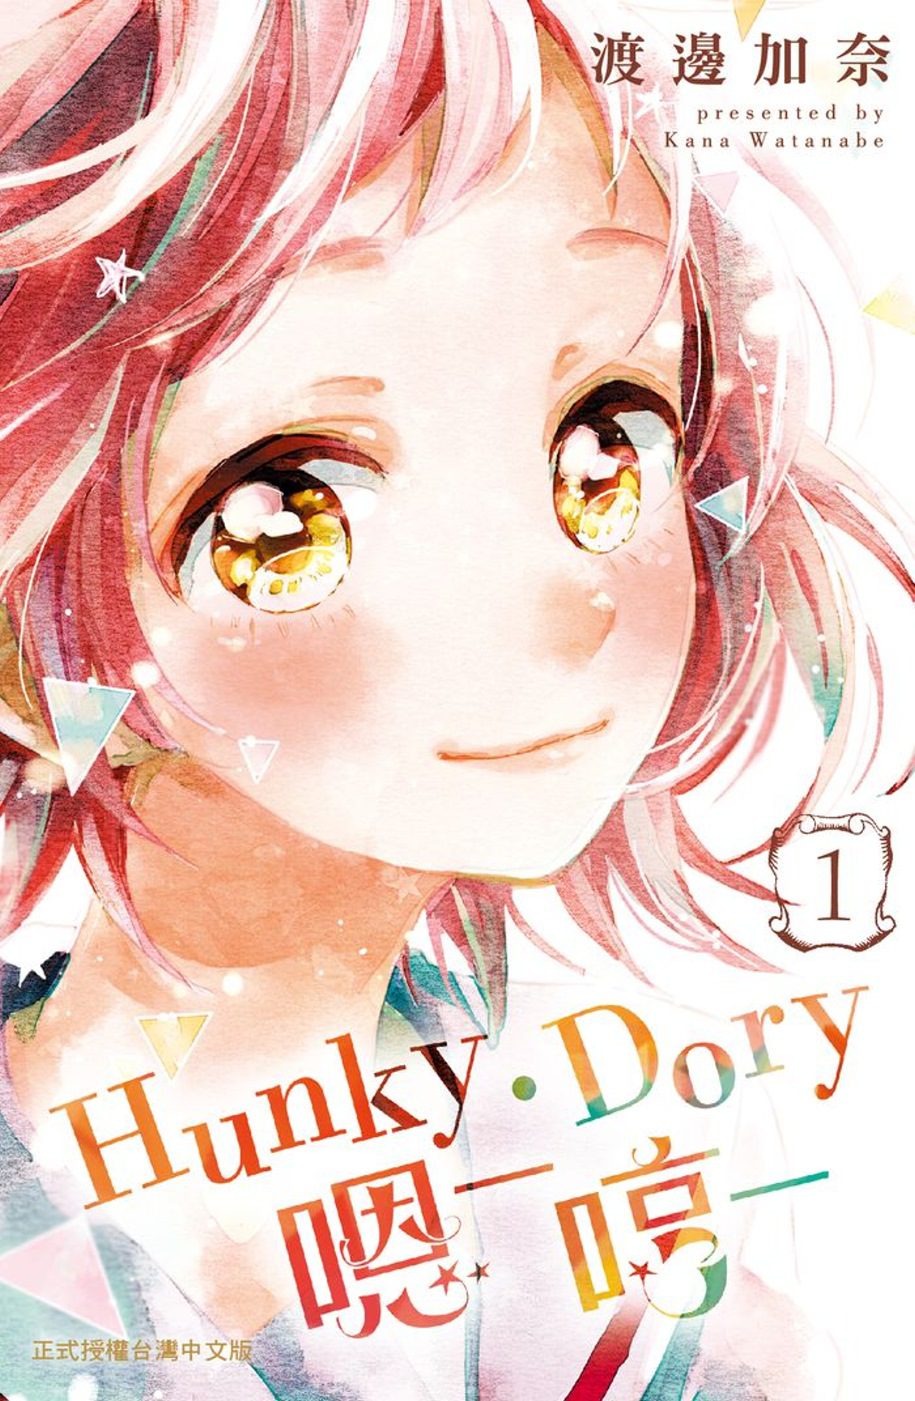 Résultat de recherche d'images pour "hunky dory manga"